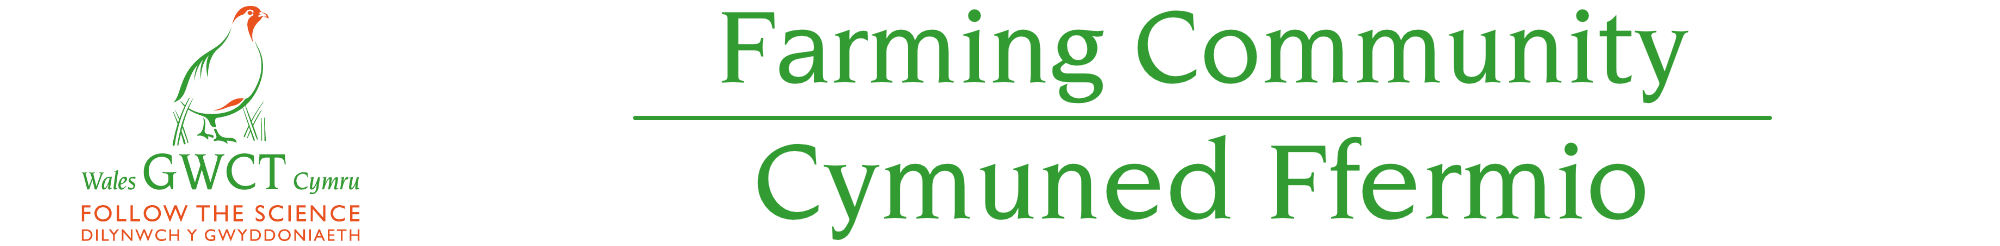 Logo for GWCT Wales Farming Community